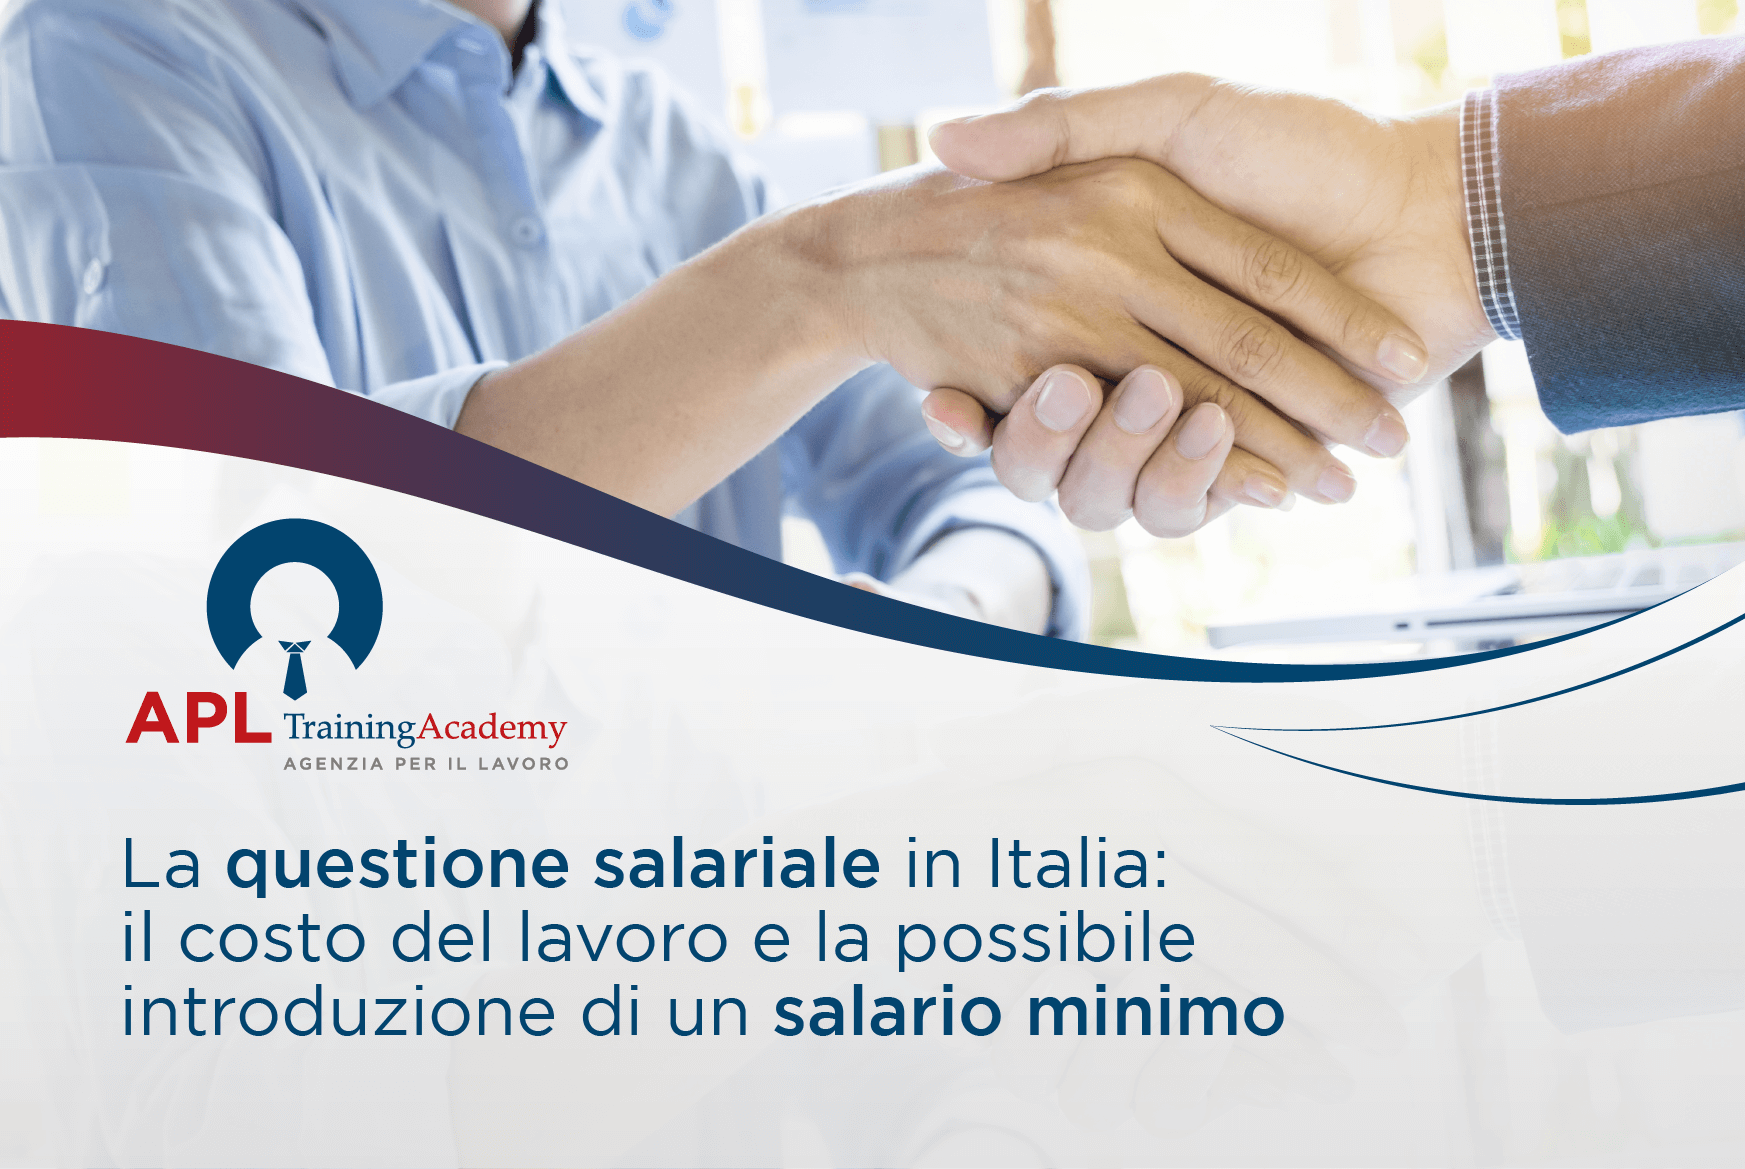 La questione salariale in Italia: la possibile introduzione di un salario minimo